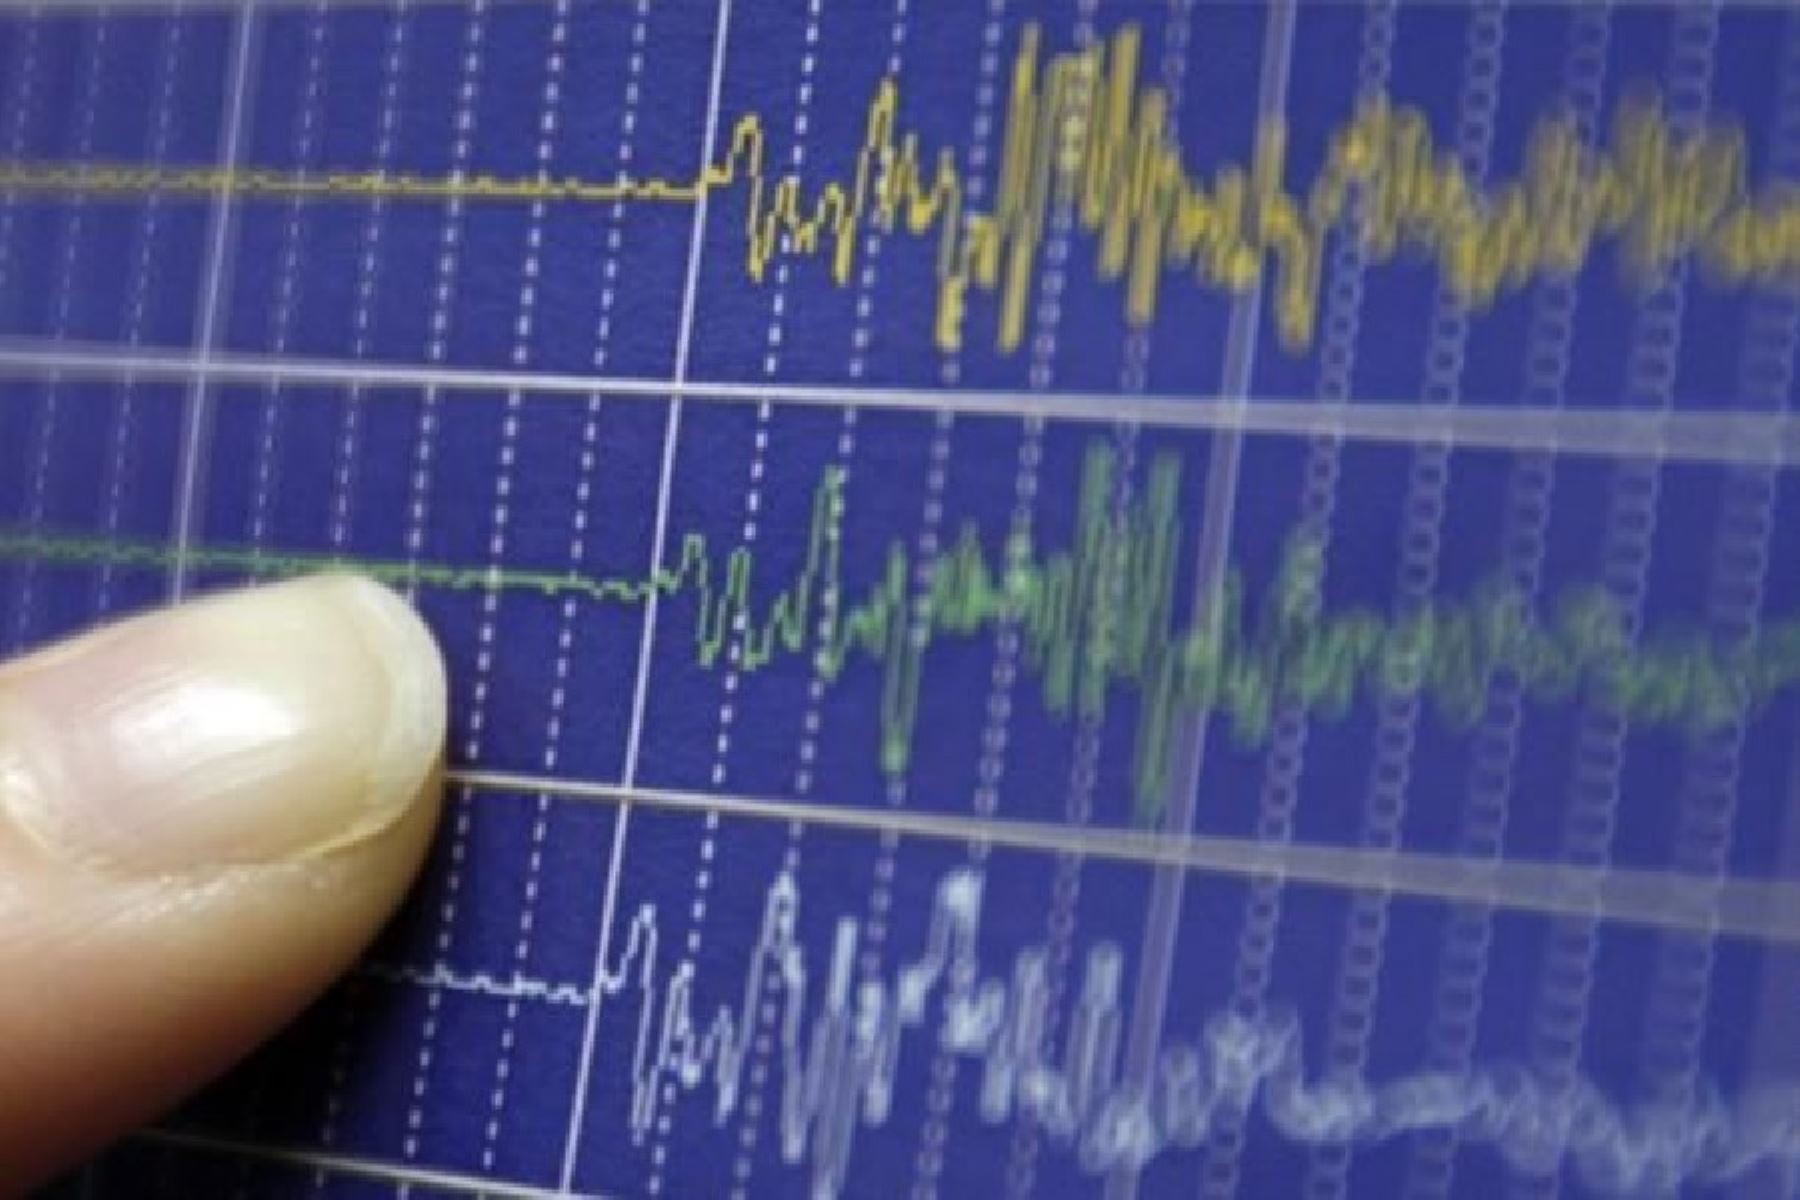 Sismo de magnitud 4.9 remeció esta noche la provincia de Purús en la región Ucayali